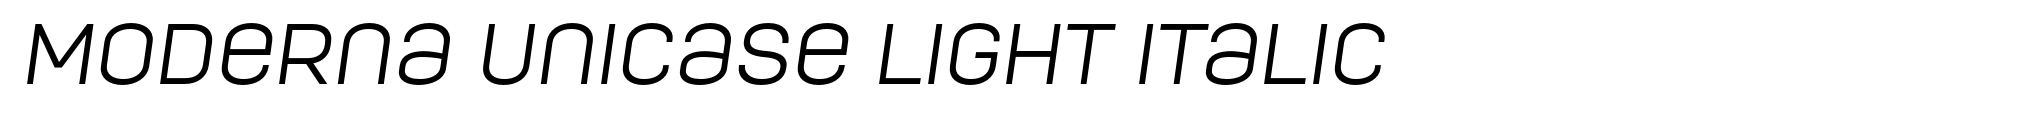 Moderna Unicase Light Italic image